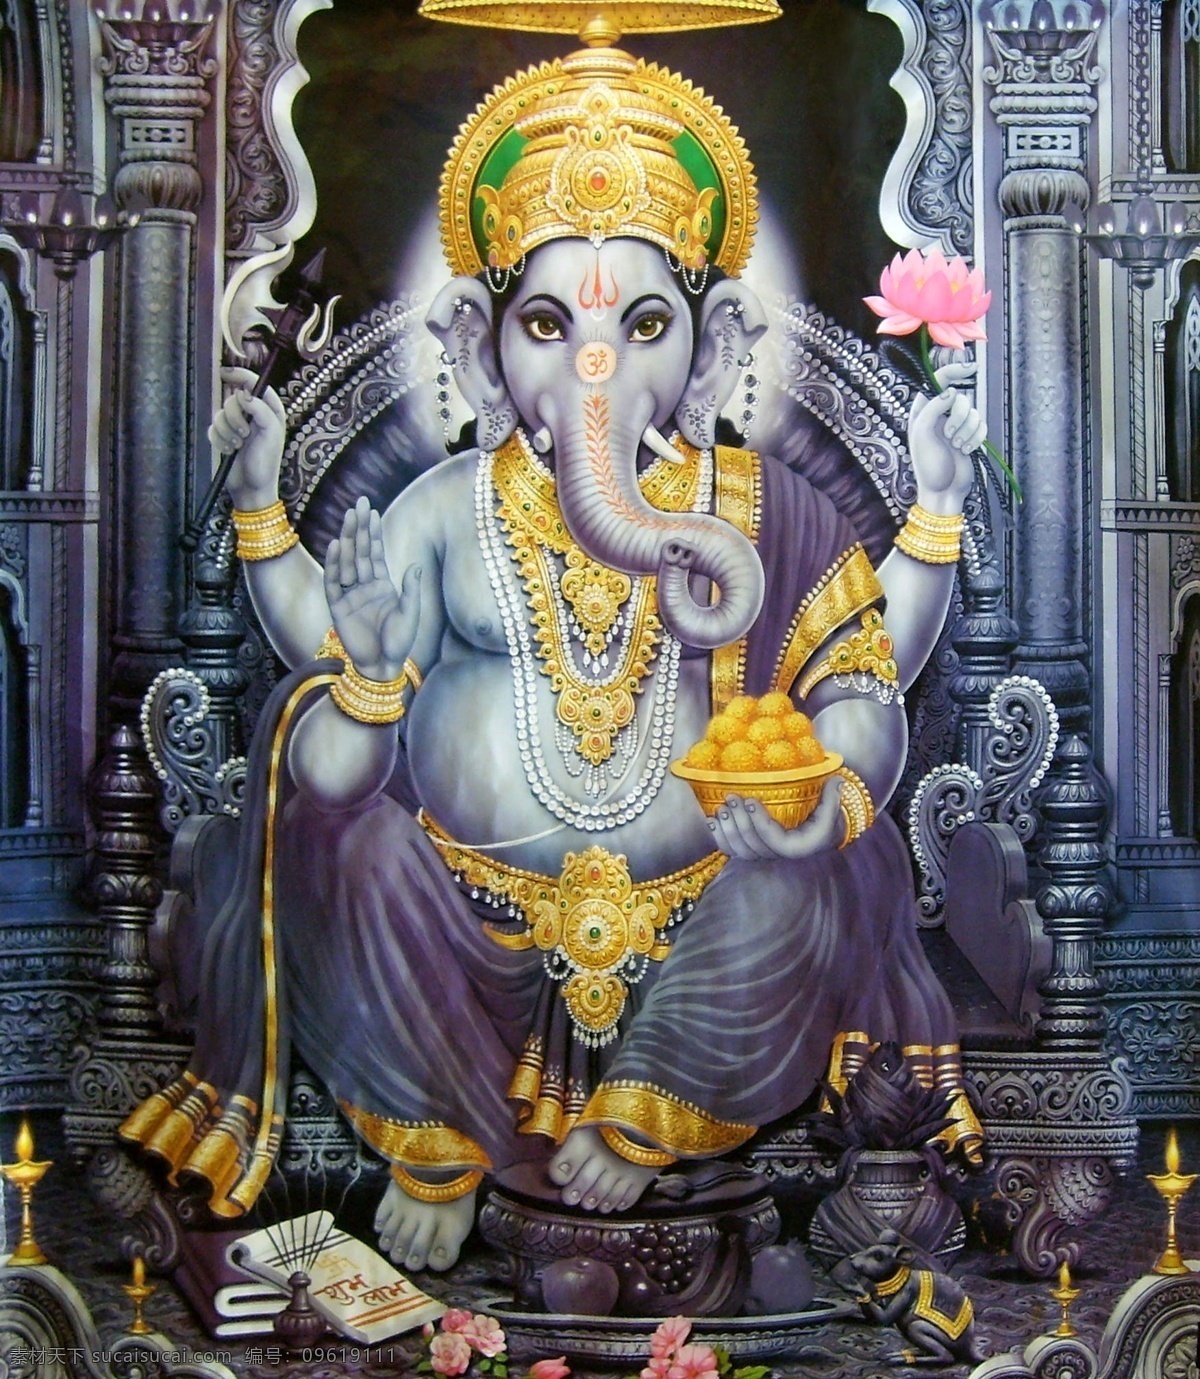 印度宗教绘画 印度教 印度神 神像 菩萨 佛像 宗教信仰 宗教绘画 文化艺术 黑色